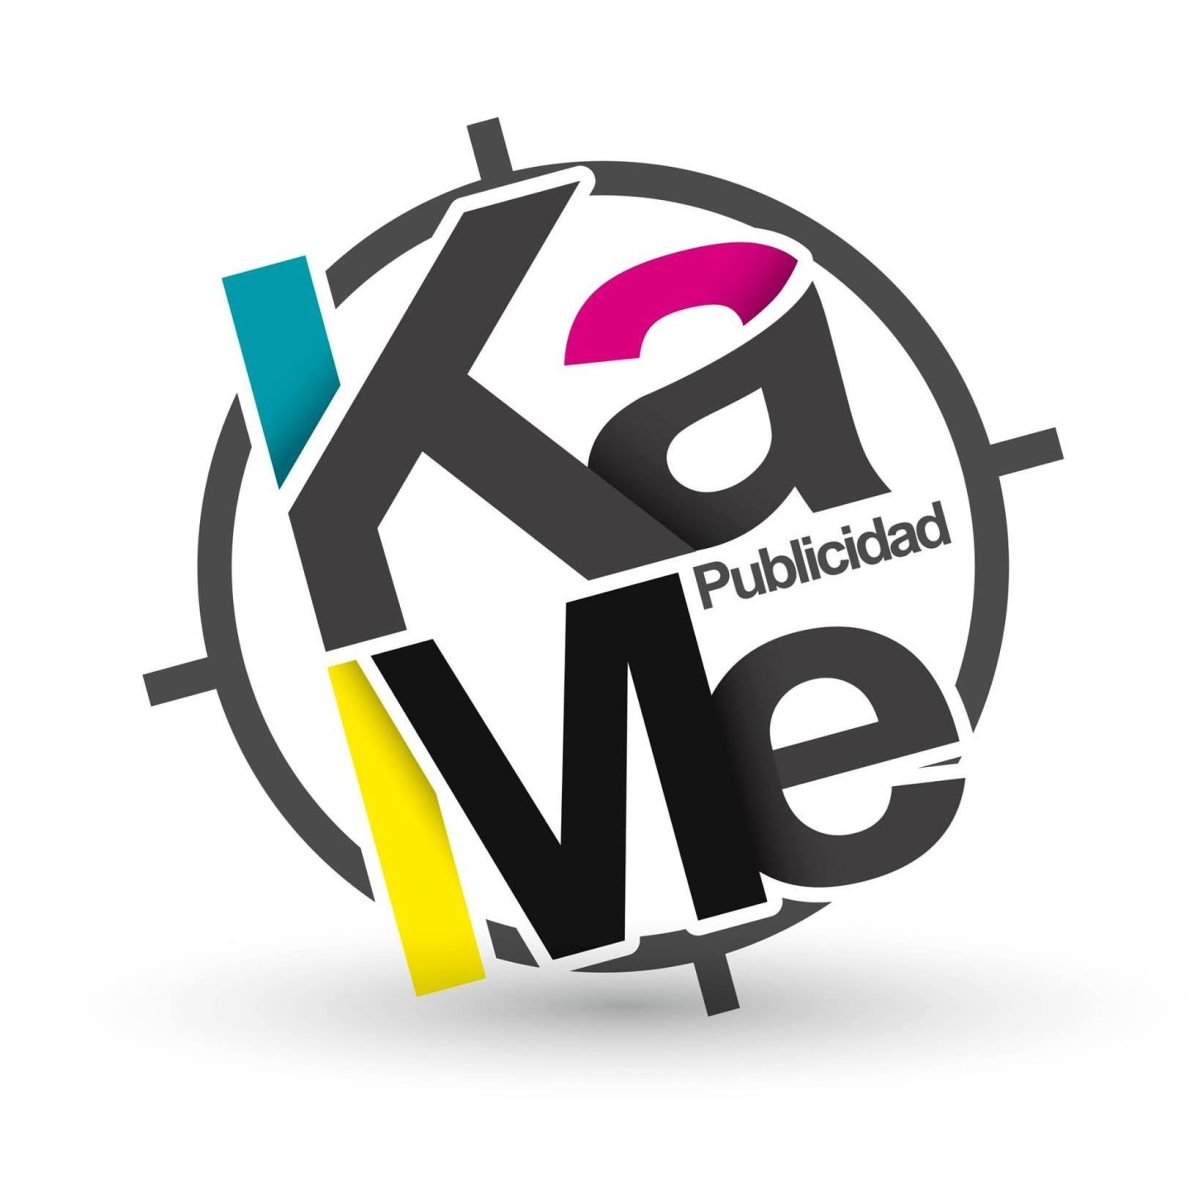 Logo KaMe Publicidad